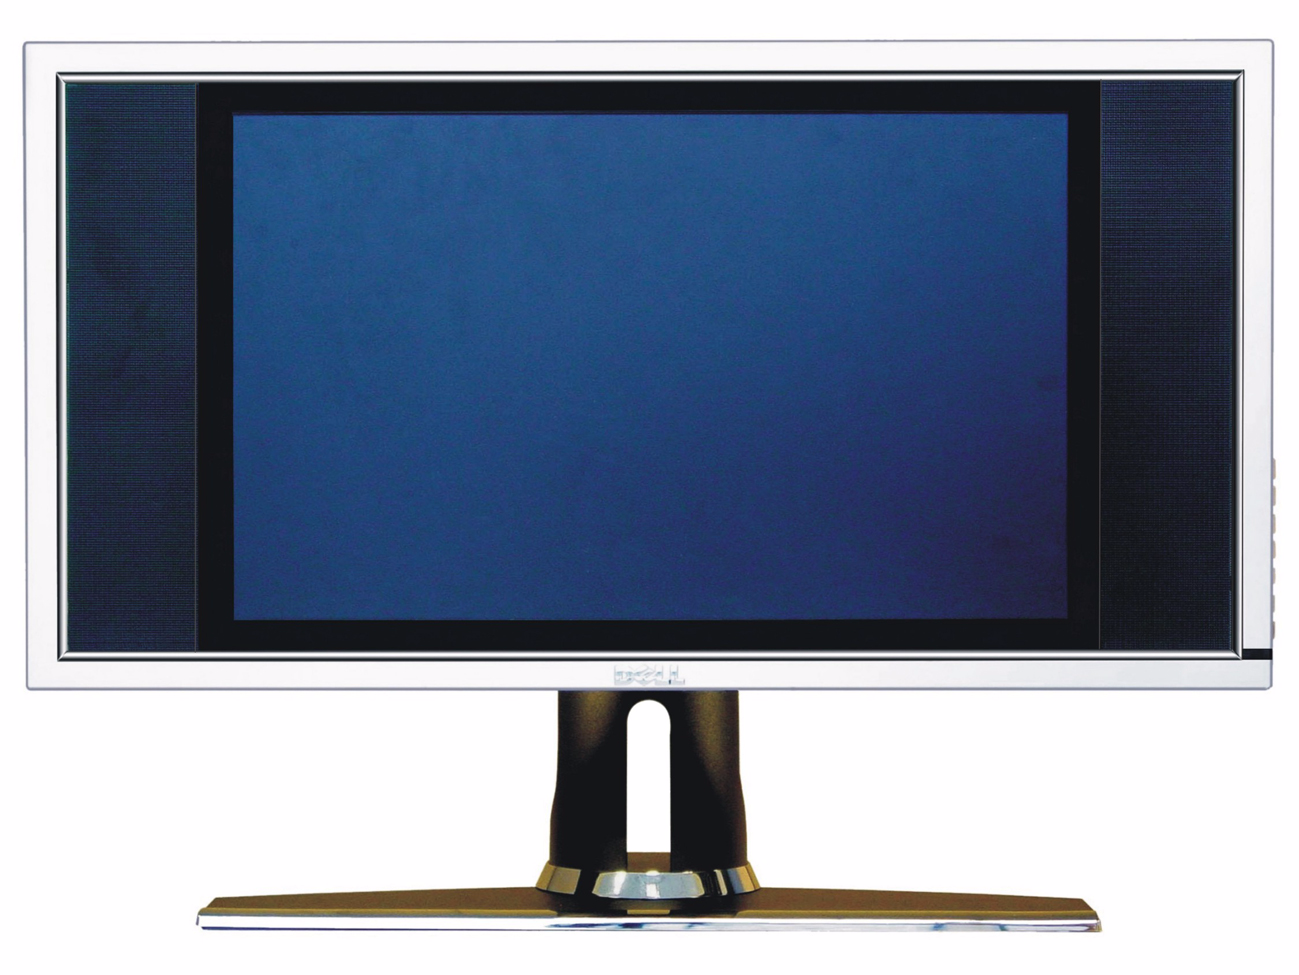 Informace o televizoru LCD Čelní pohled 2 1 1 Infračervený přijímač Zjišt uje signál dálkového ovladače.